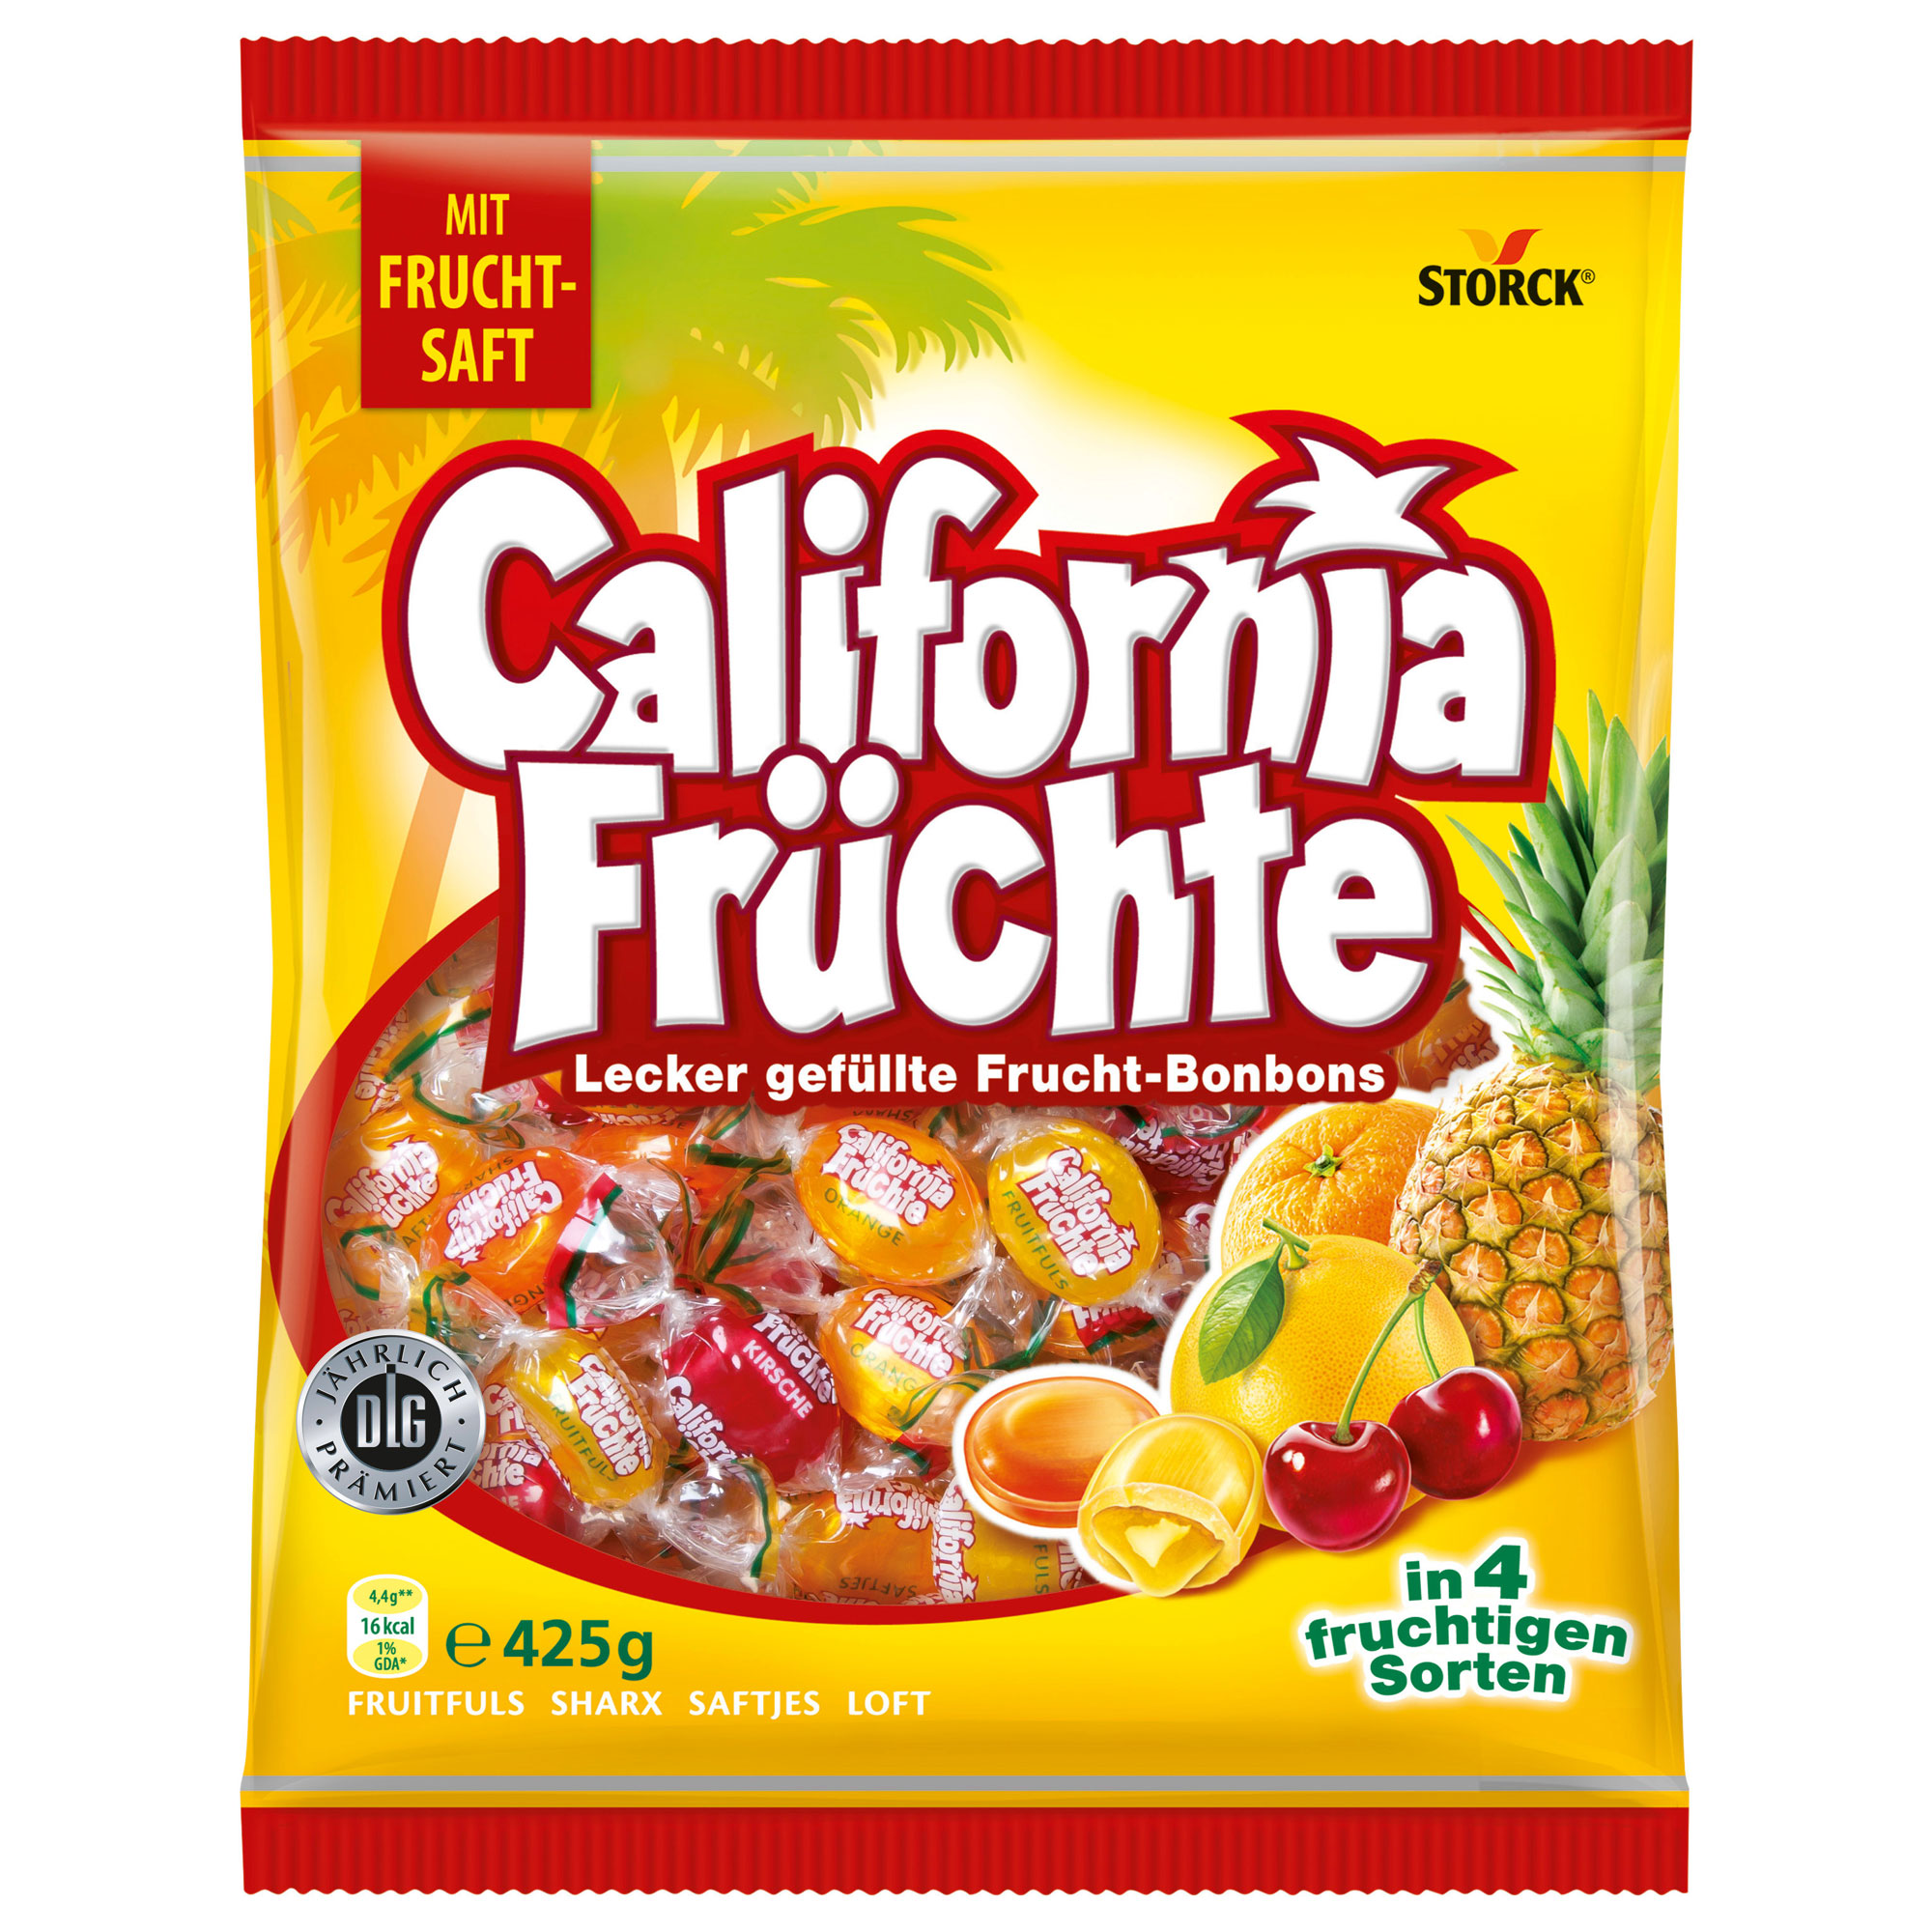 California Früchte